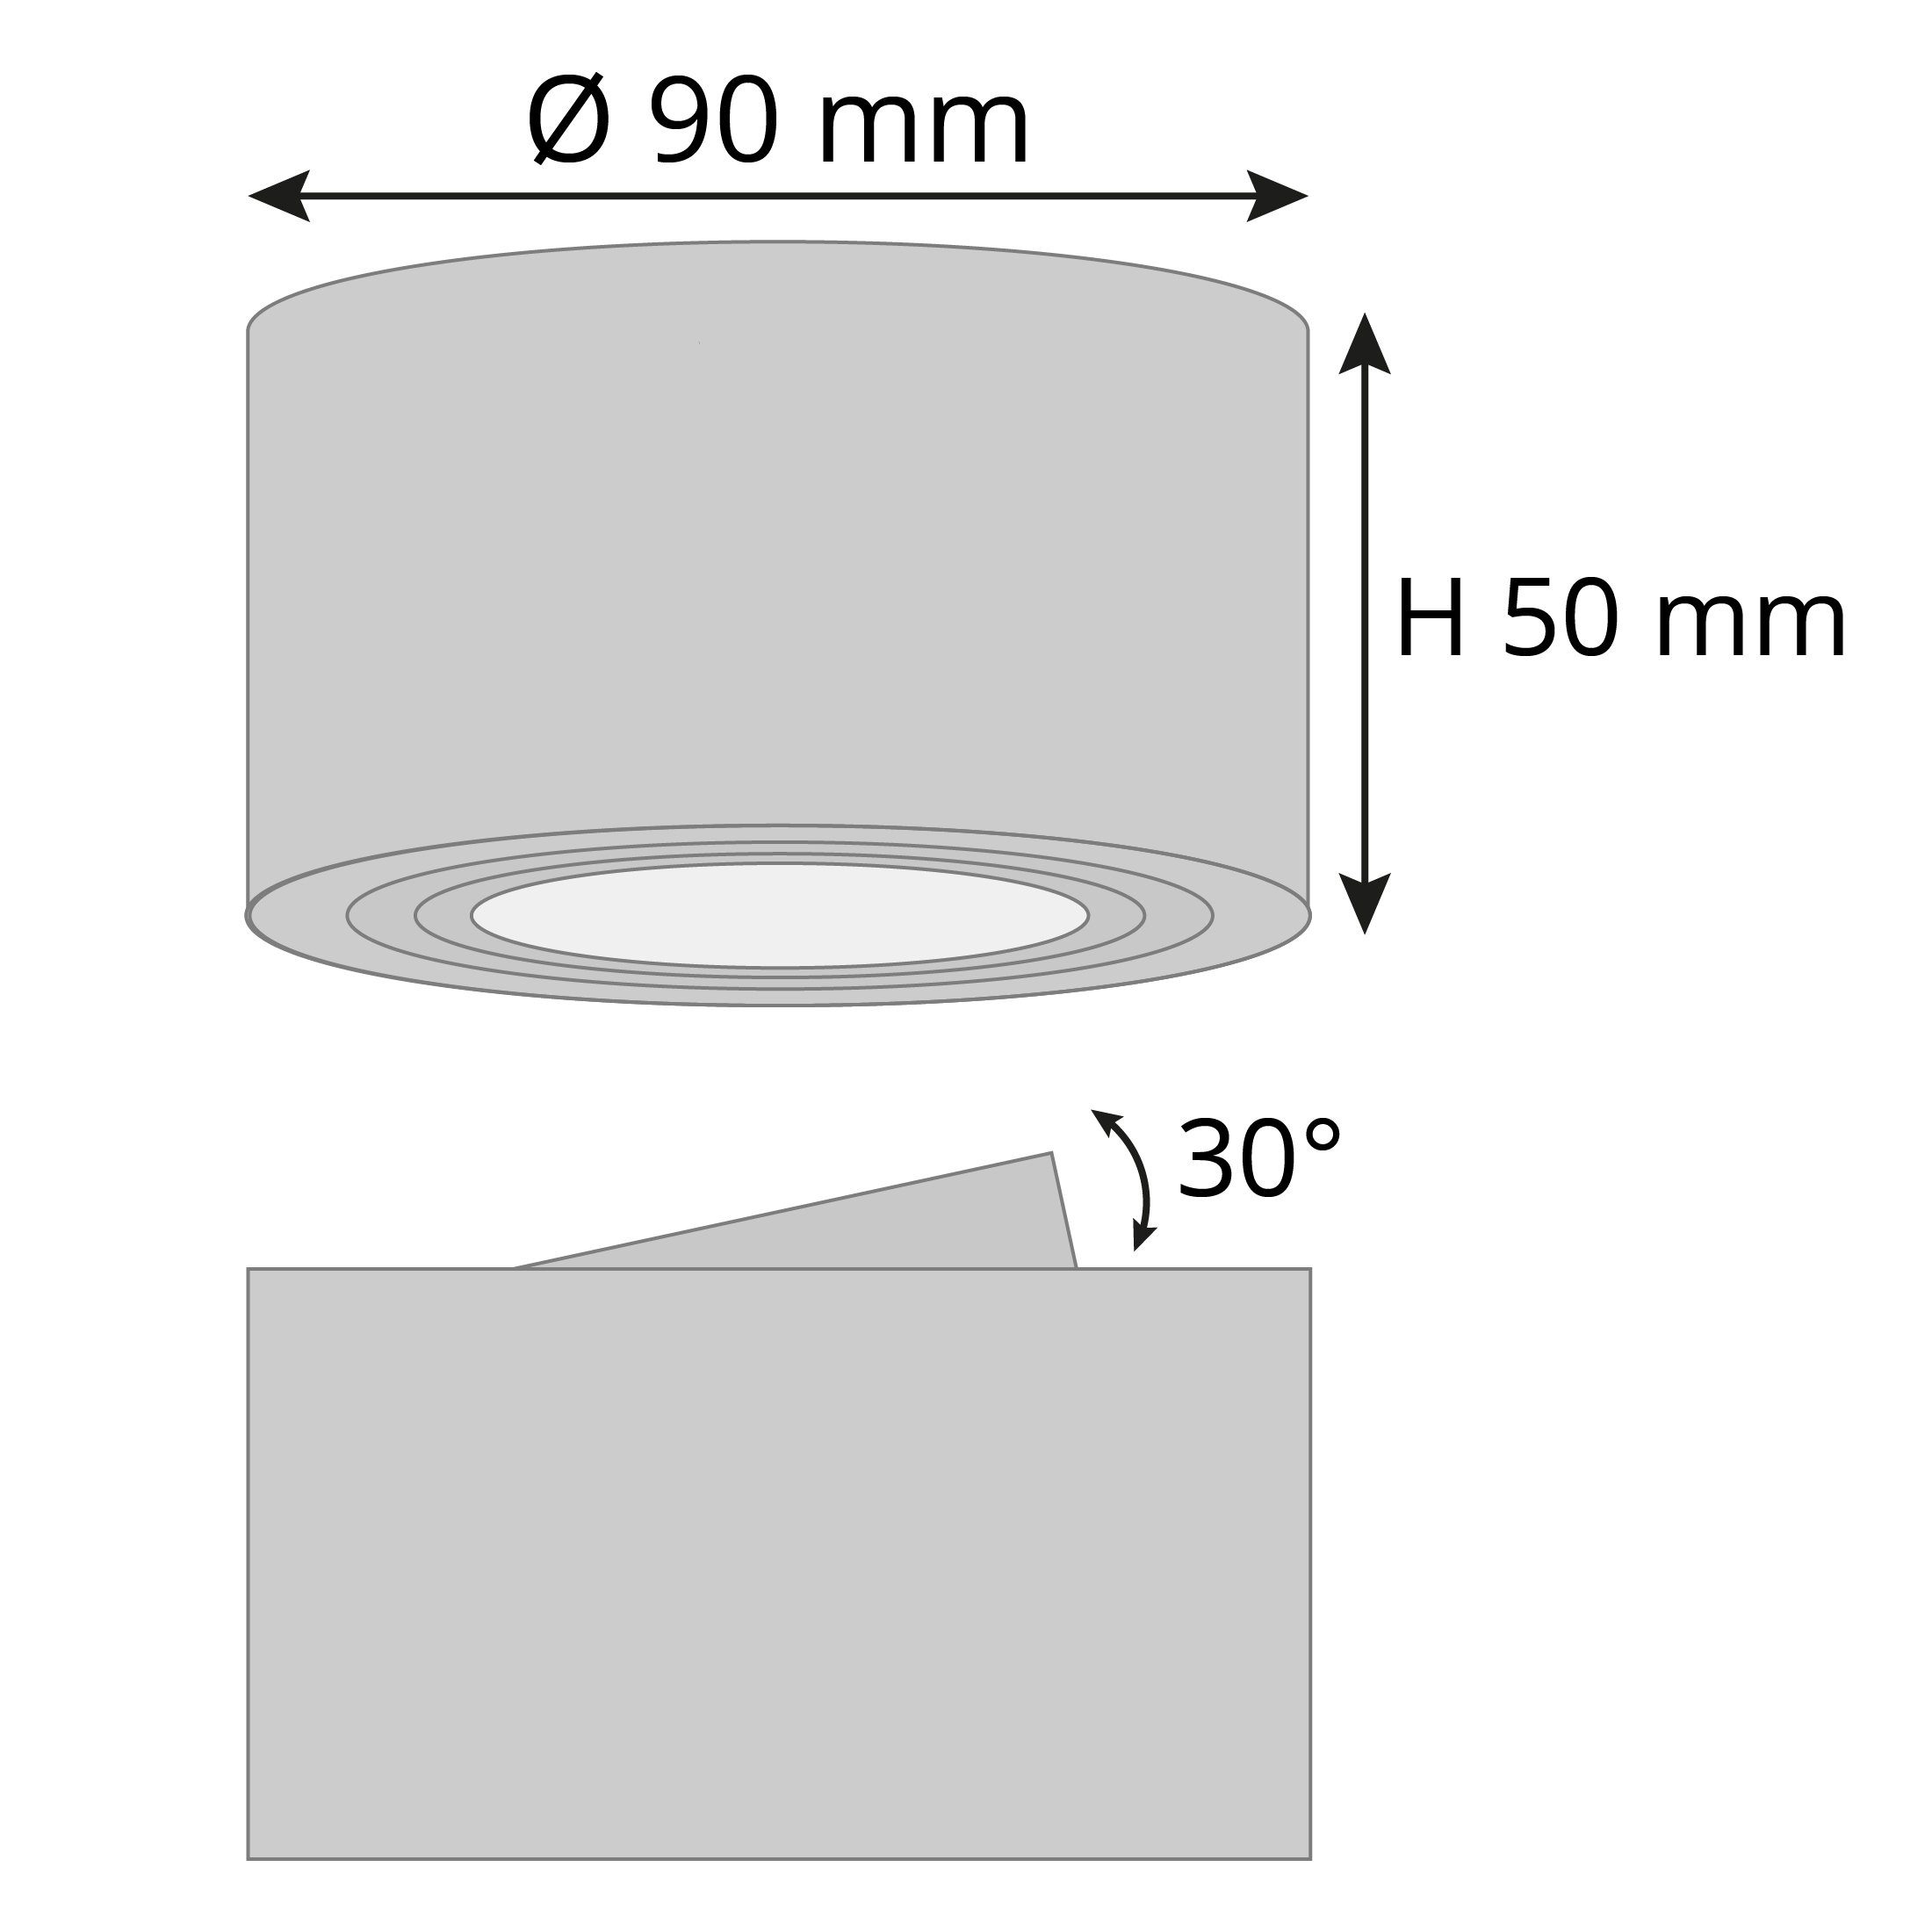 SSC-LUXon Aufbauleuchte Flacher Deckenspot Aufbauspot dimmbarer Warmweiß mit schwenkbar Alu LED